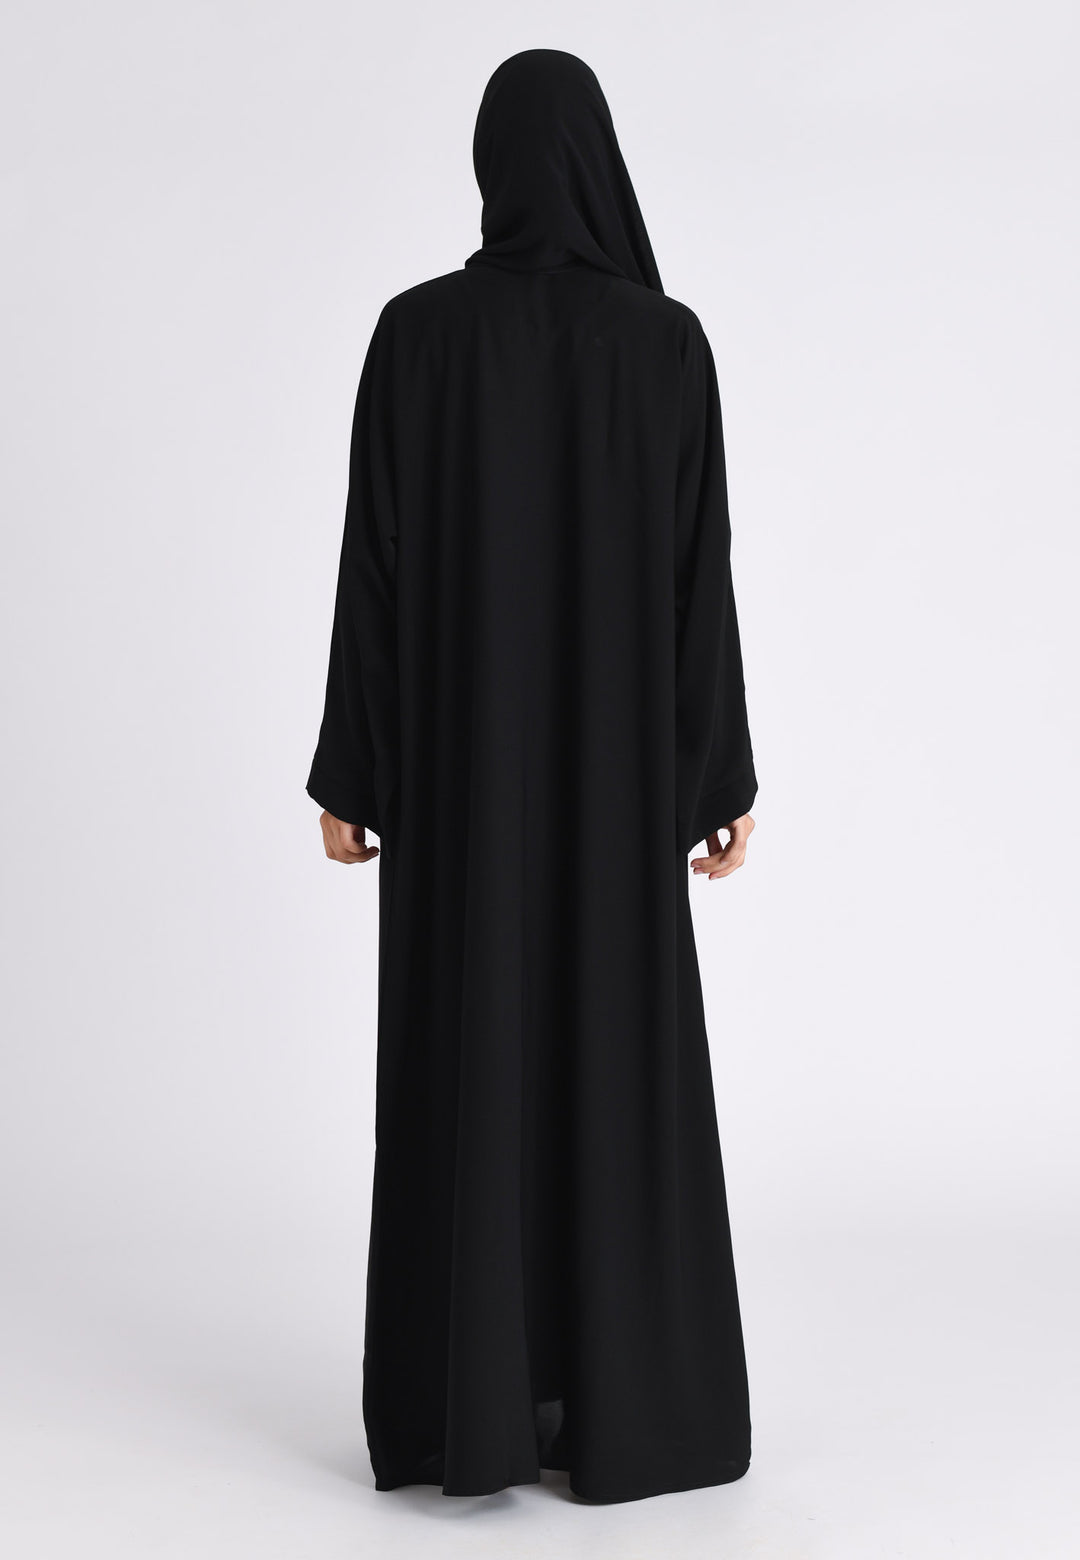 Plain Black Open Abaya (Premium)